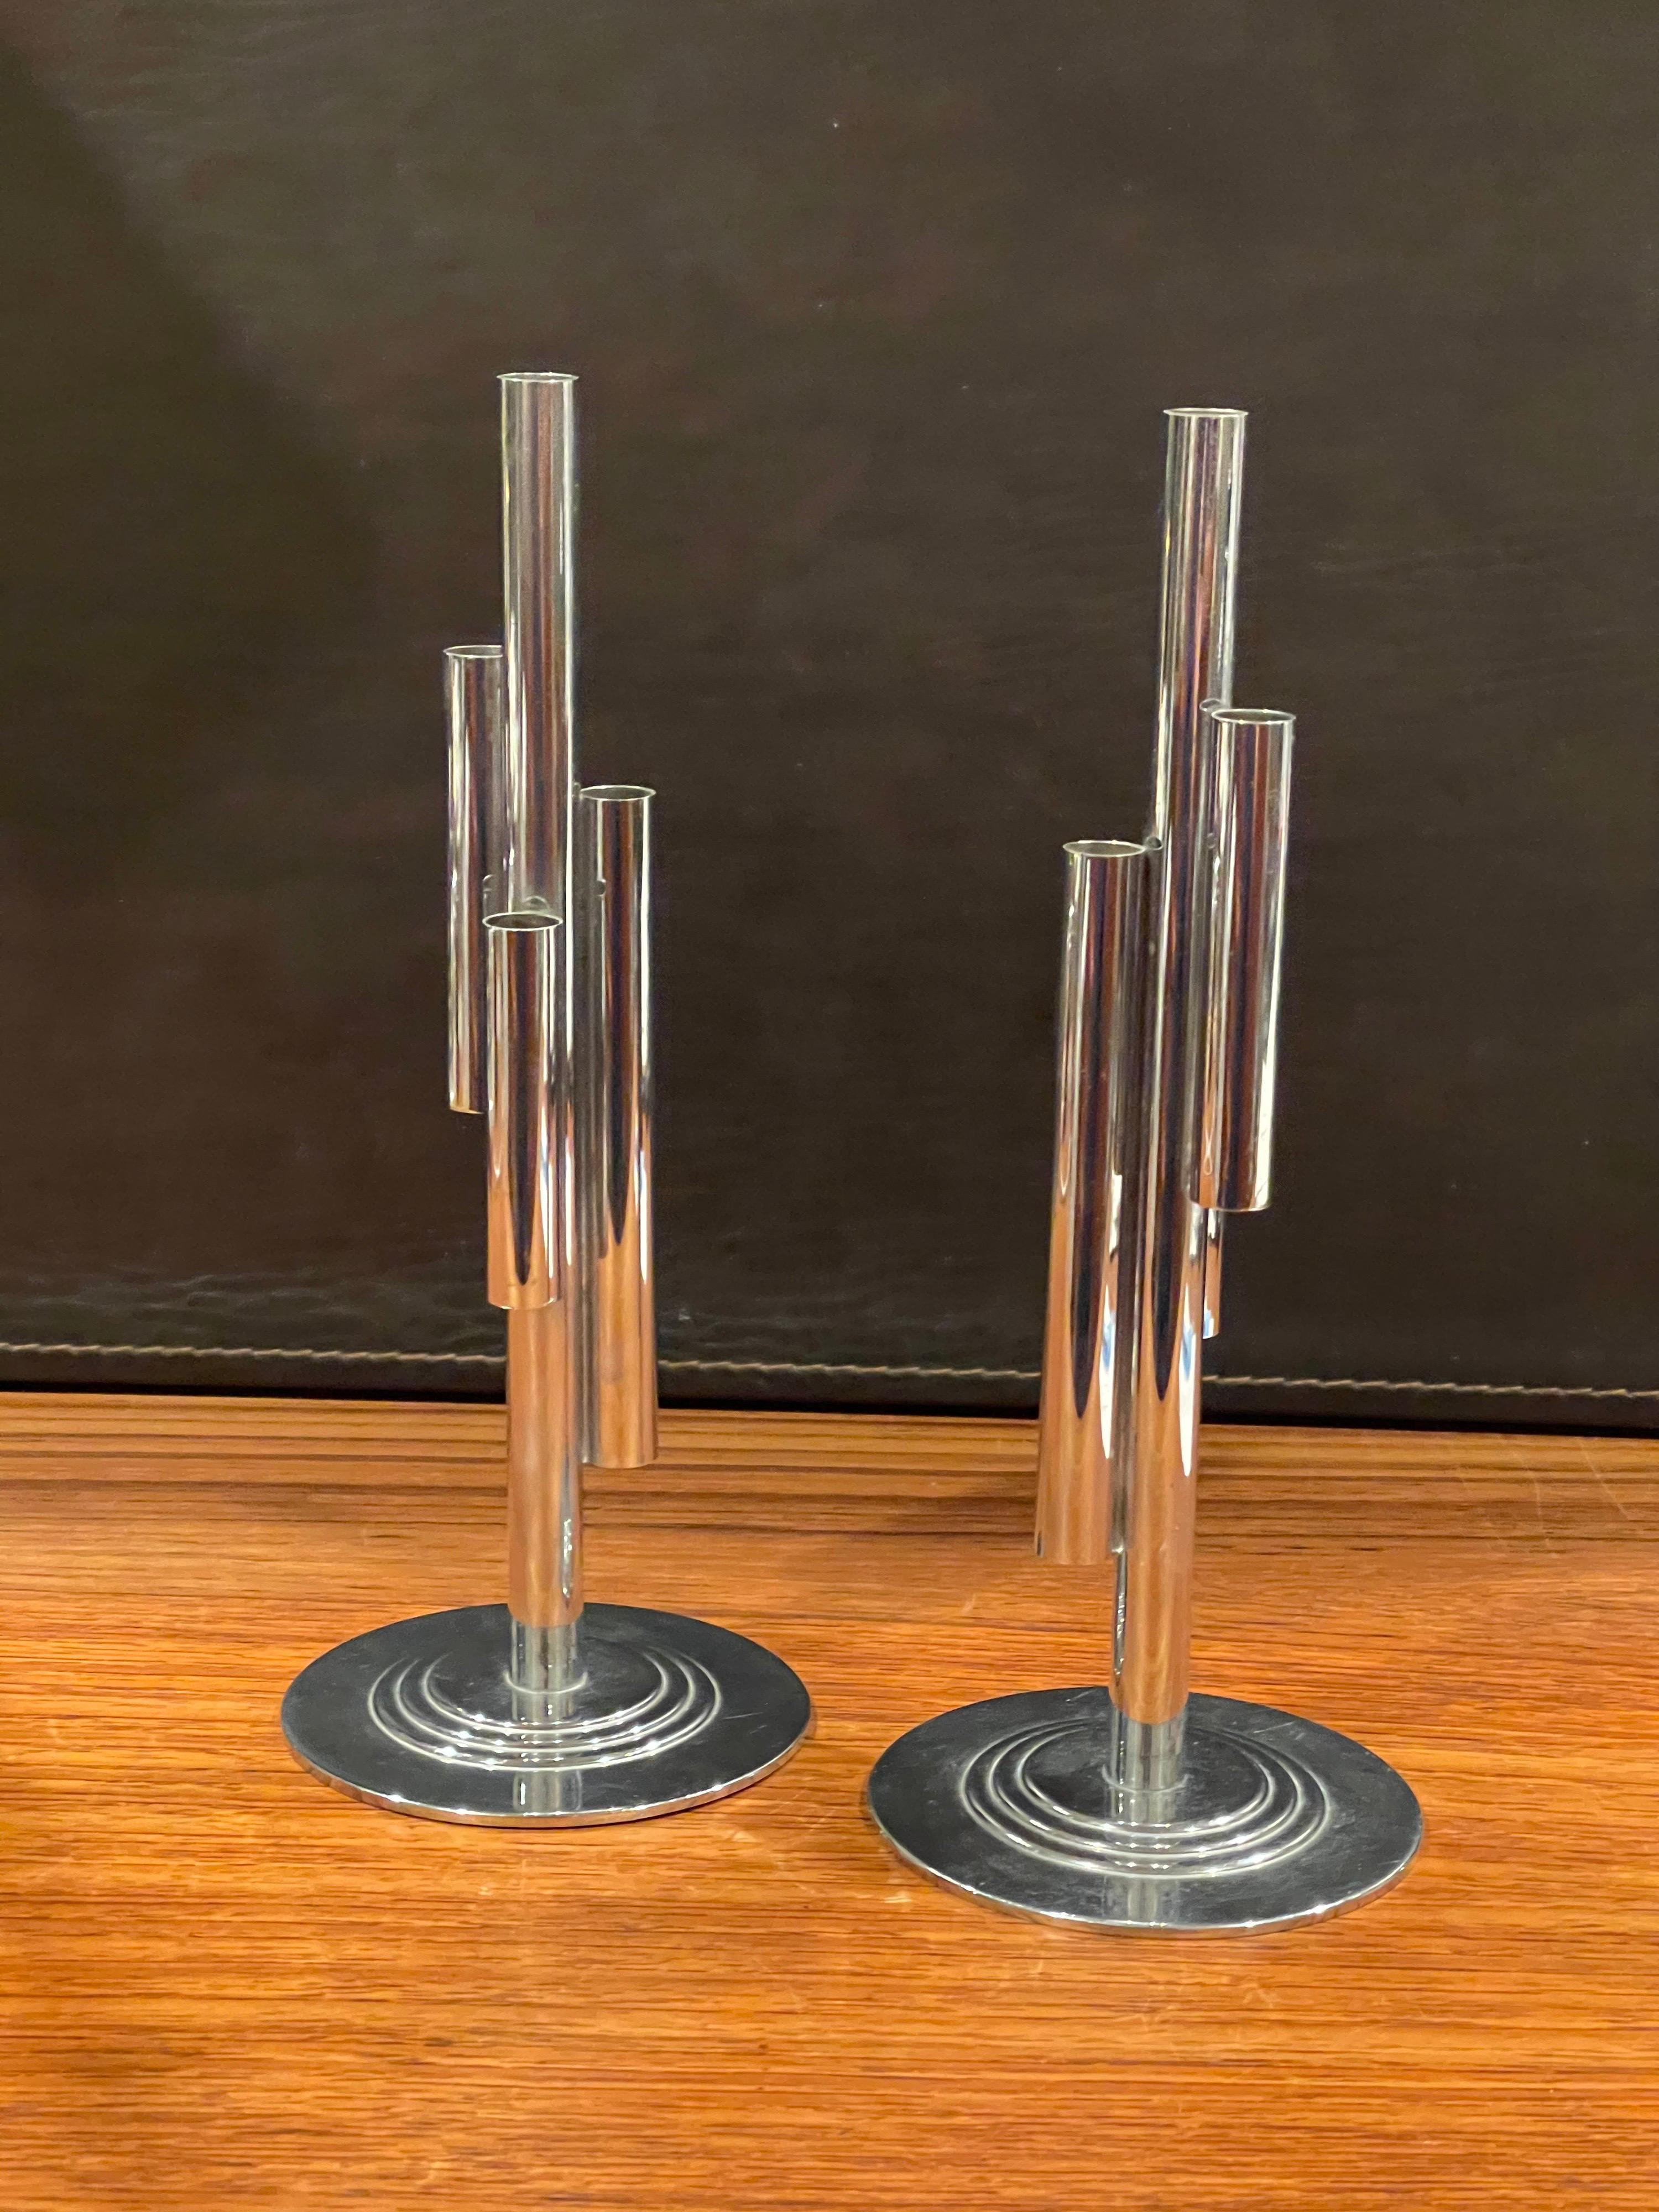 Merveilleuse paire de vases boutons tubulaires chromés Art Déco par Ruth & William Gerth pour Chase & Co, vers les années 1930. Le design présente un tube central chromé auquel sont fixés trois tubes de longueurs et de hauteurs différentes, montés